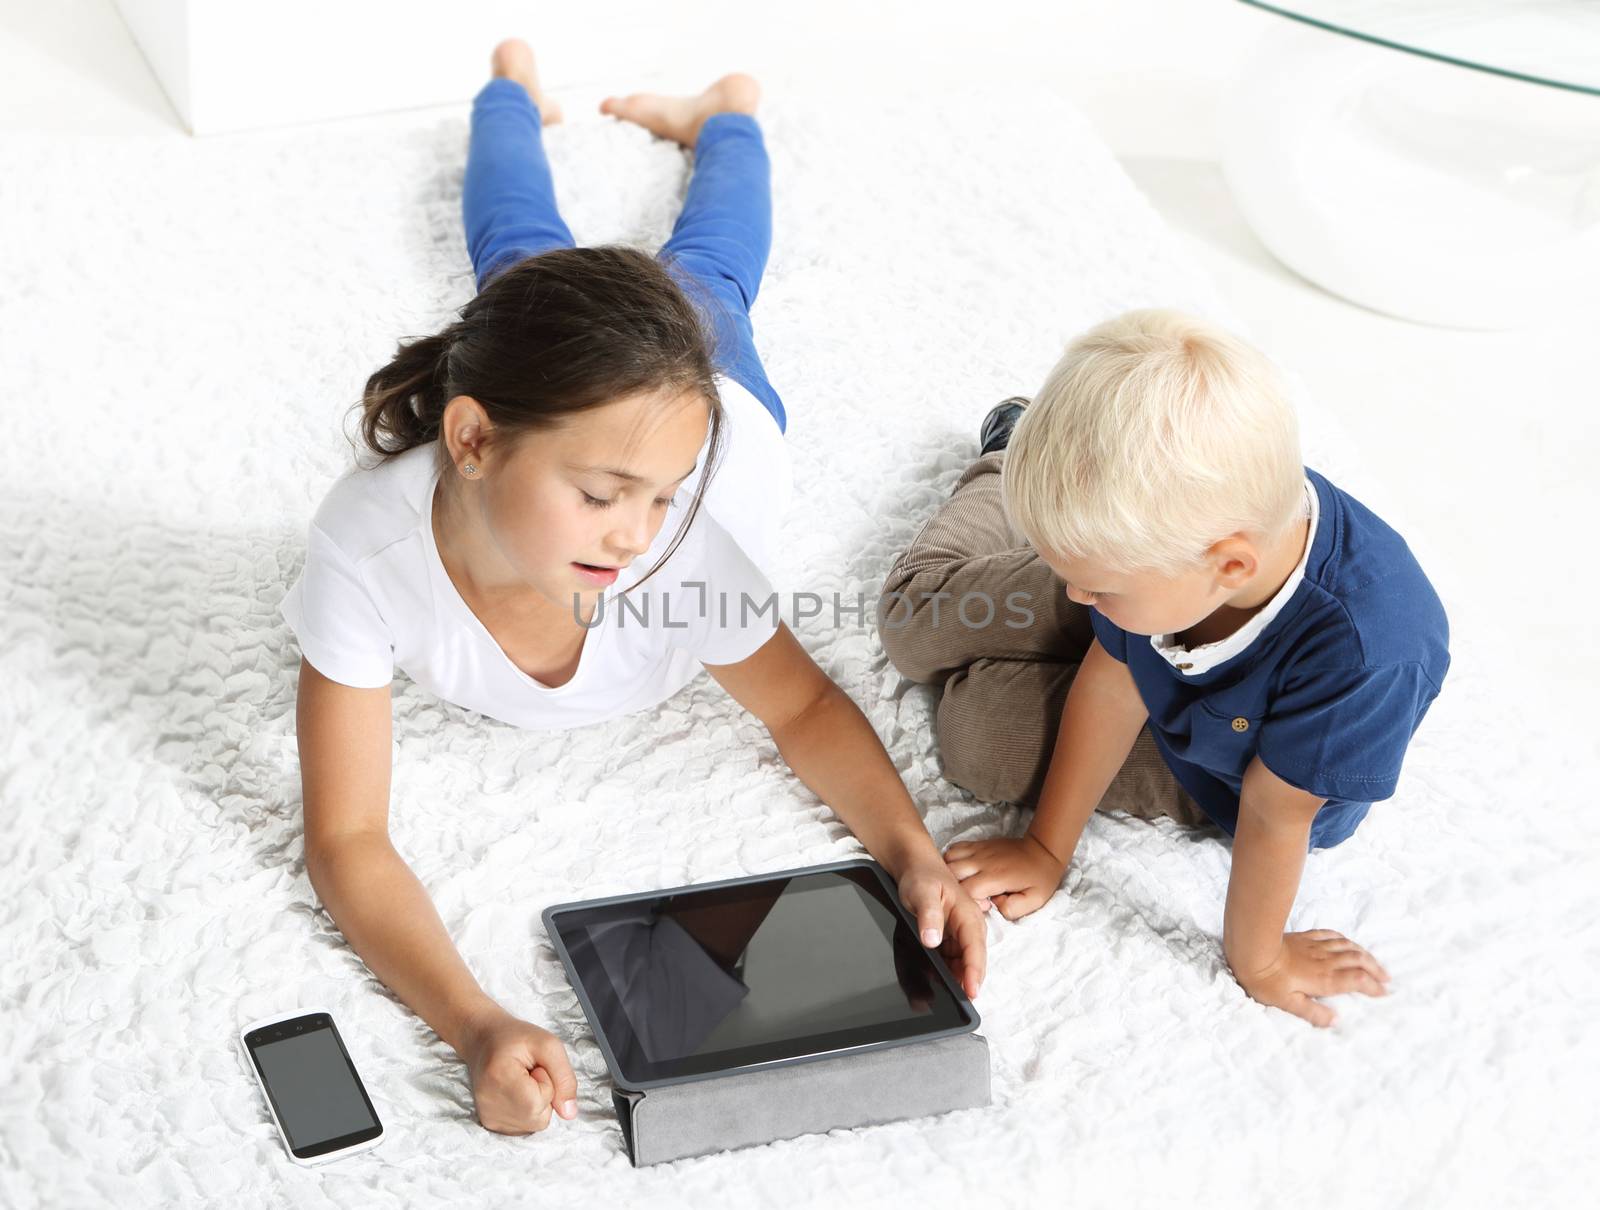 Children look tablet